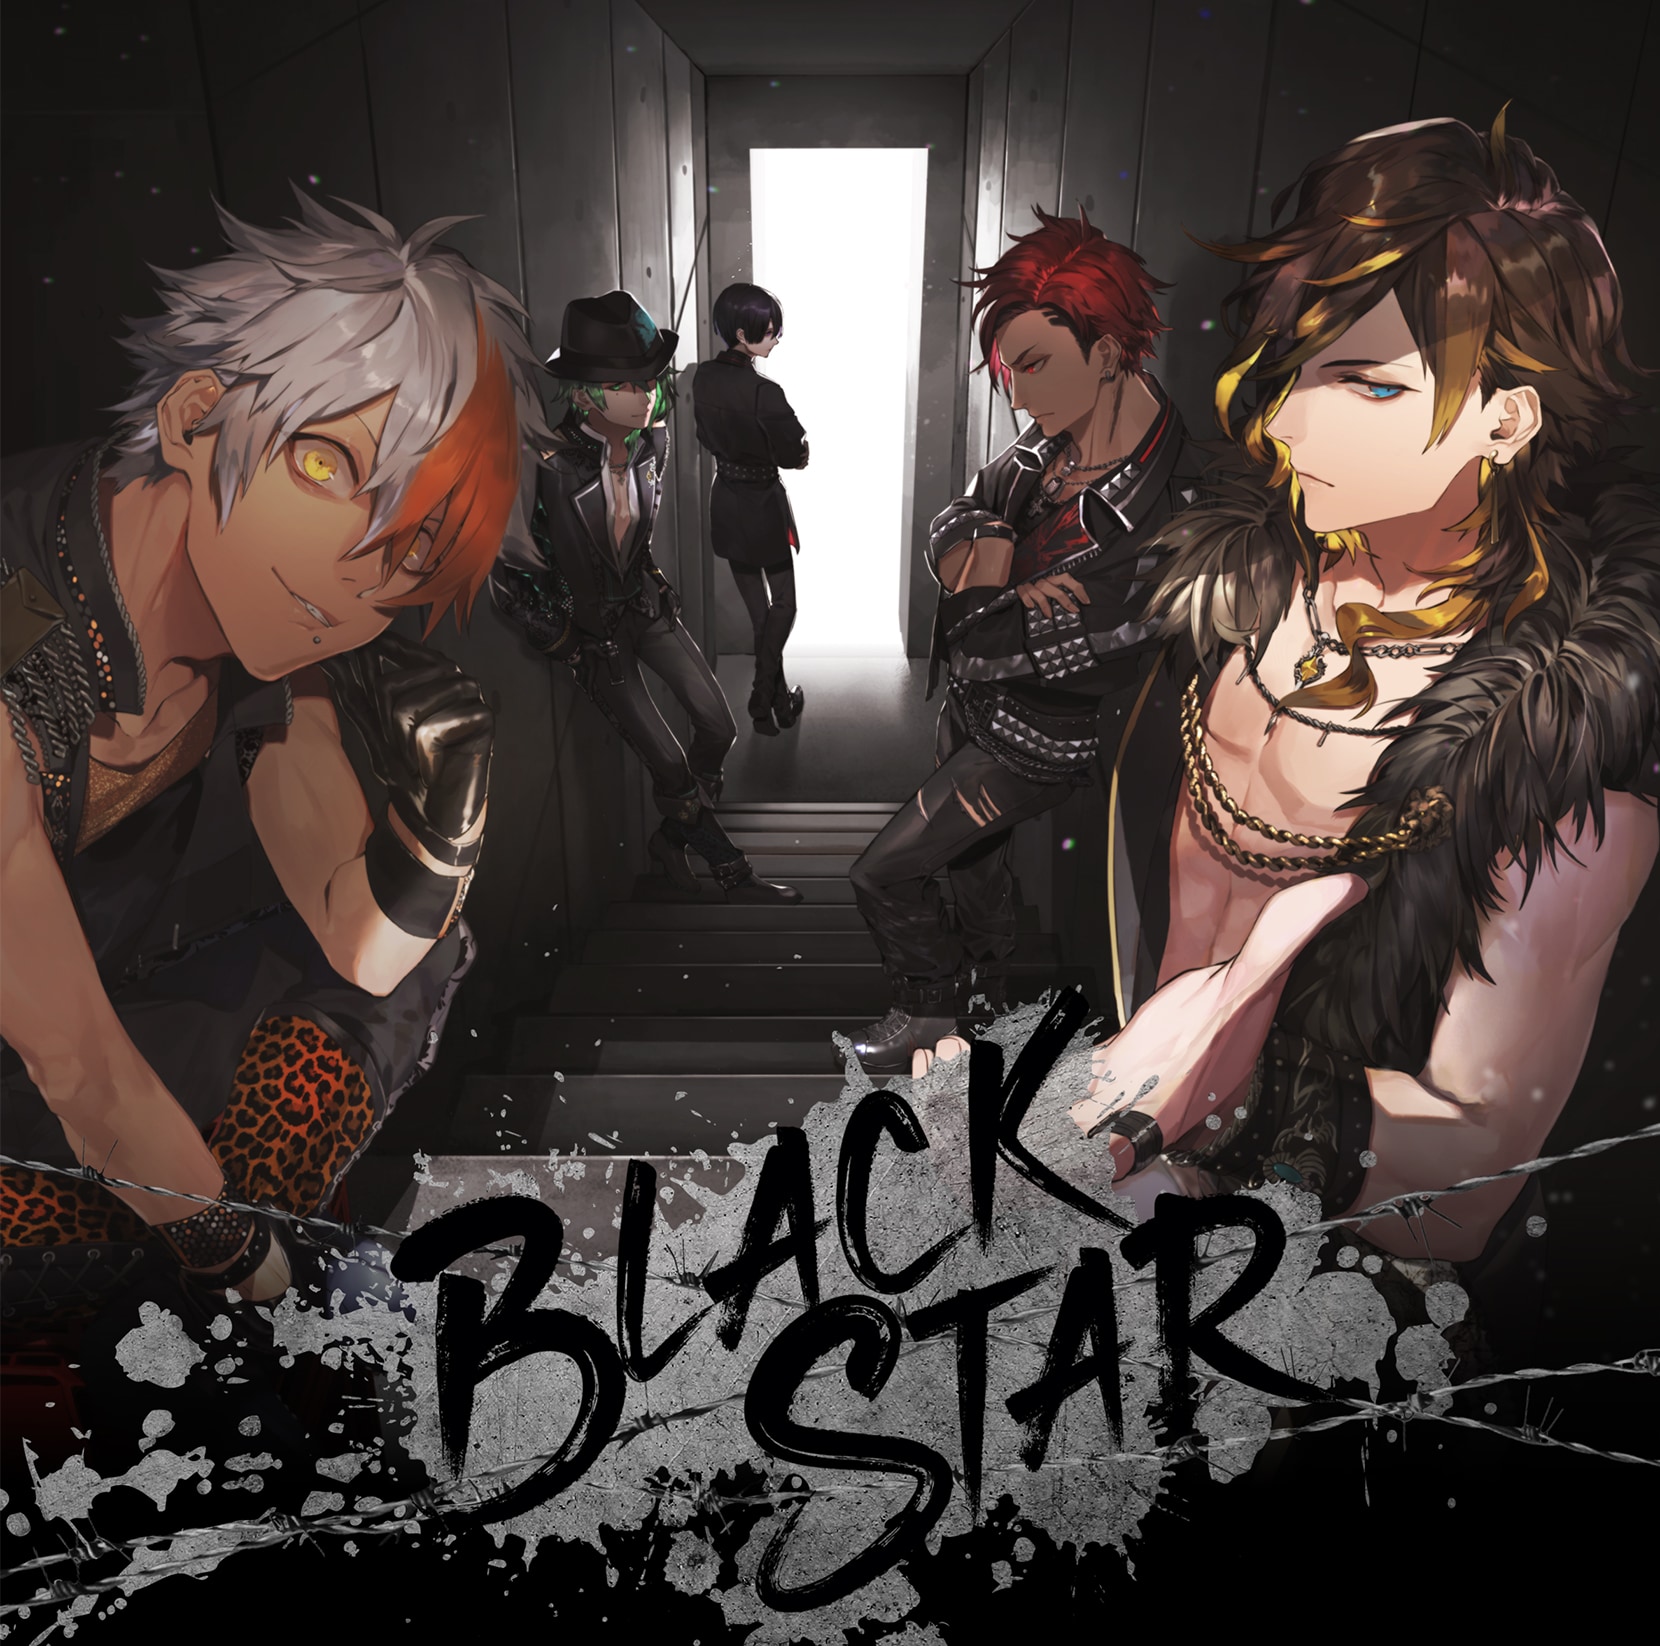 ブラスタ』1stアルバム「BLACKSTAR」発売決定！初回限定版はチーム別にパッケージを展開 (2020年7月8日) - エキサイトニュース